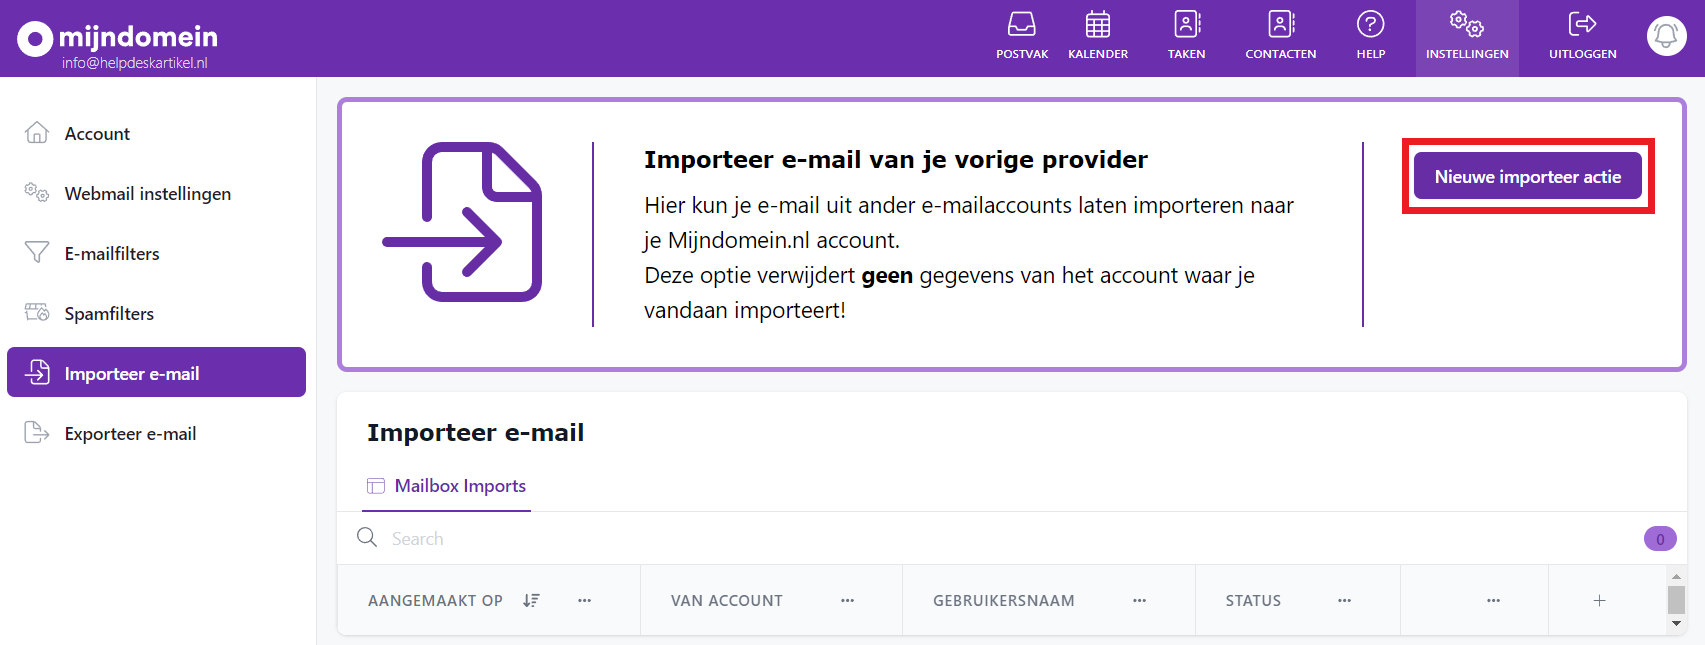 Importeer e-mail - Nieuwe importeer actie.png